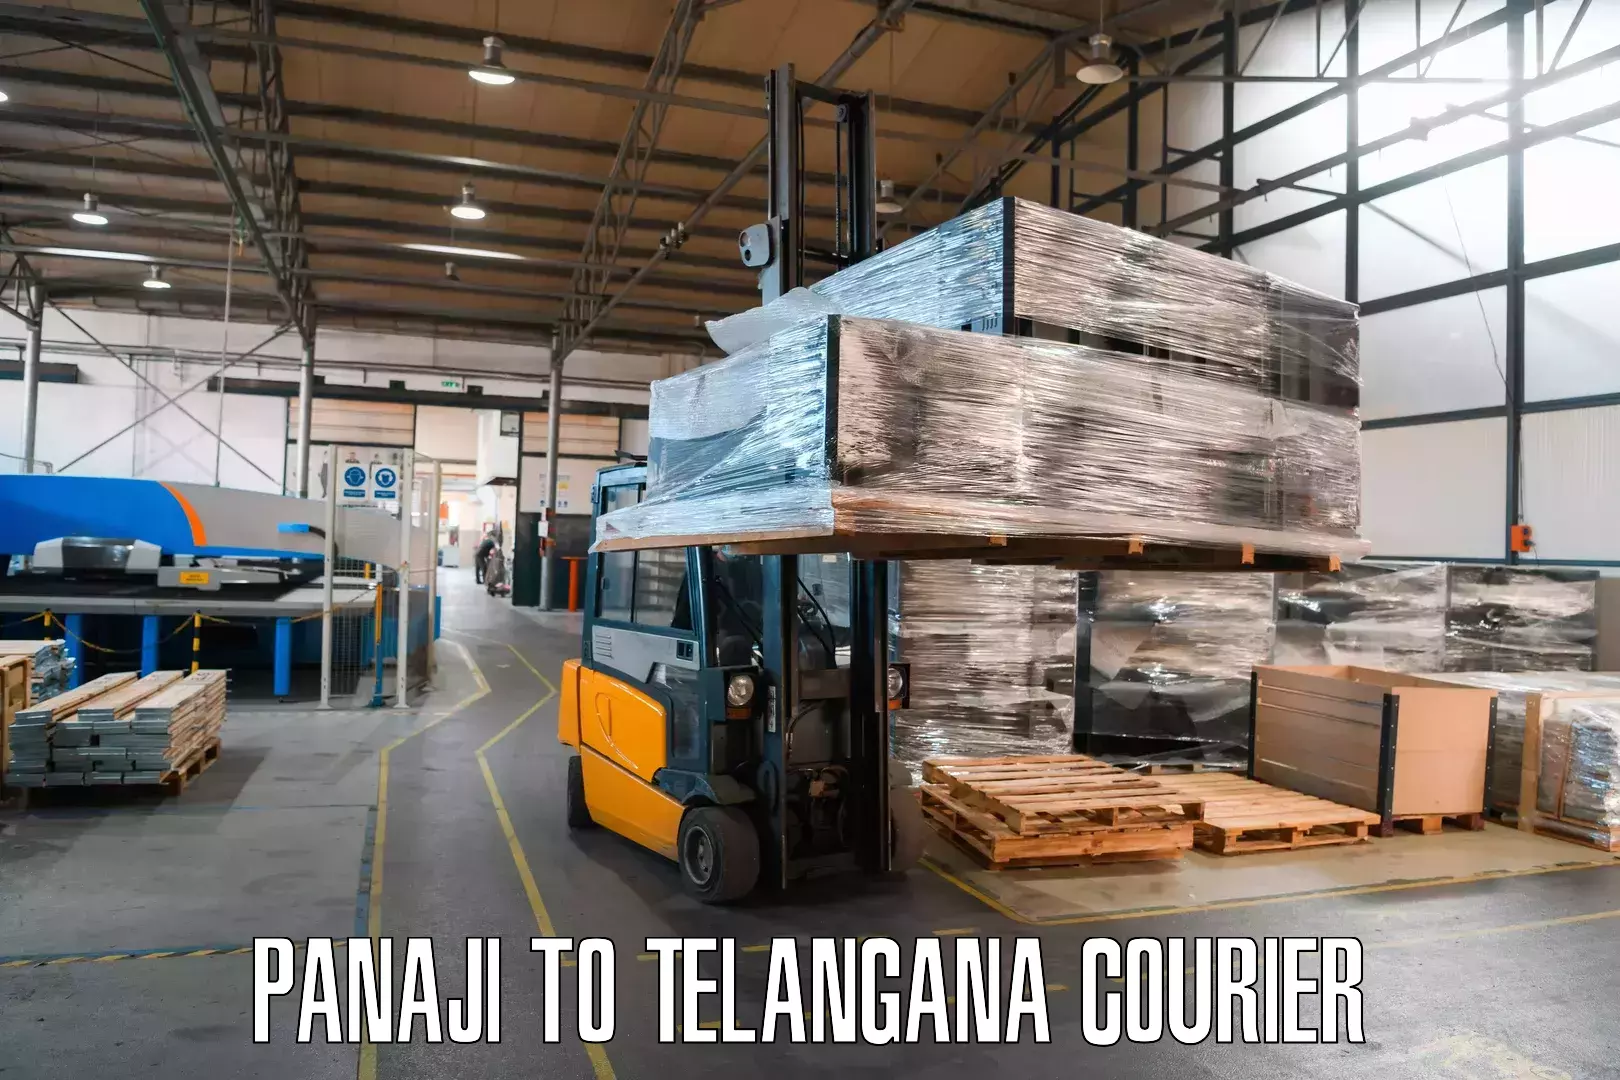 Logistics service provider Panaji to Veenavanka